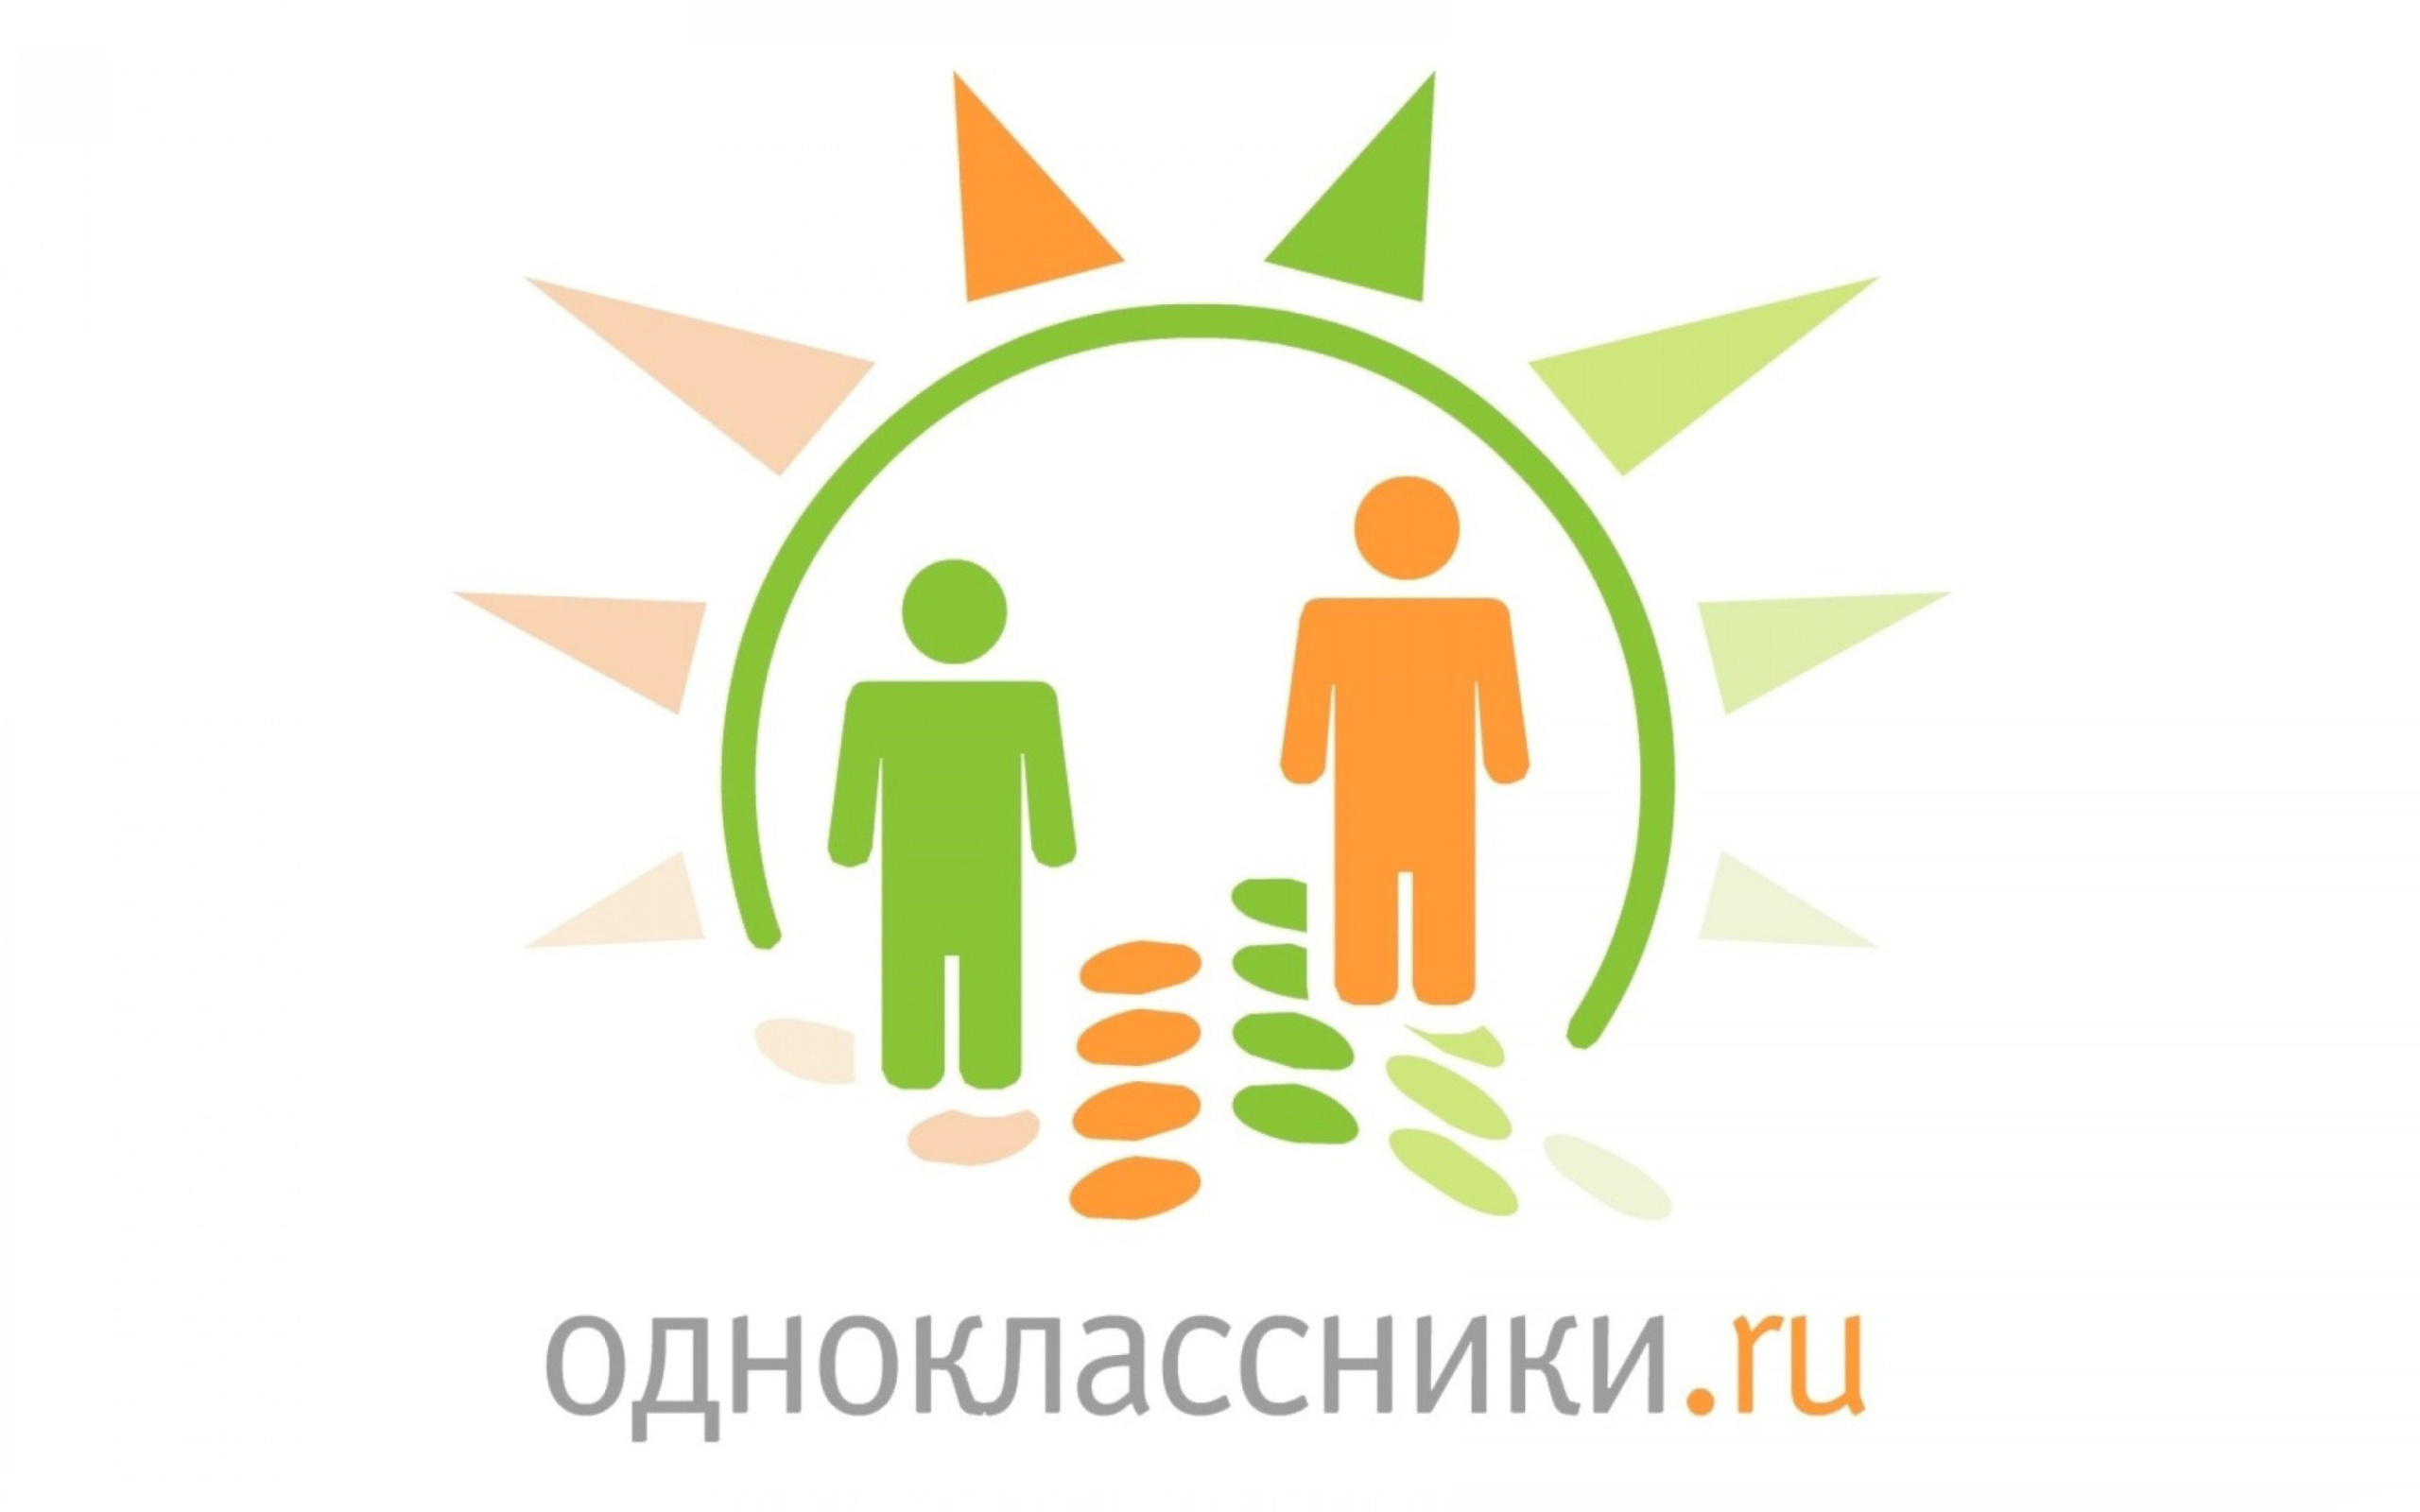 Sfondi Odnoklassniki ru 2560x1600